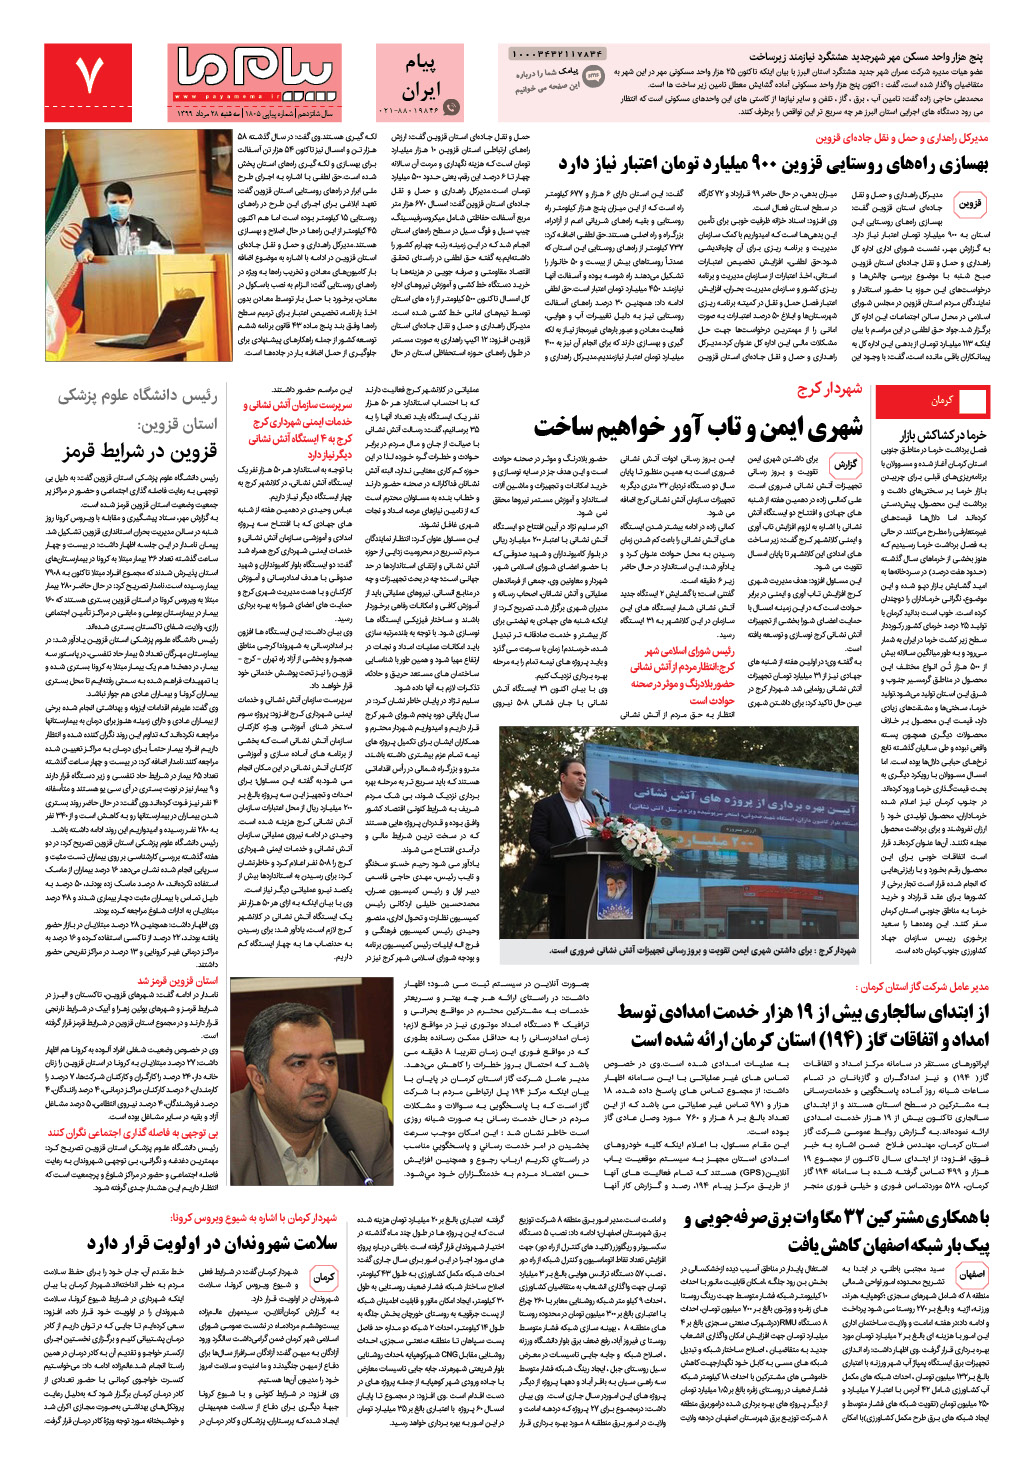 صفحه پیام ایران شماره 1805 روزنامه پیام ما